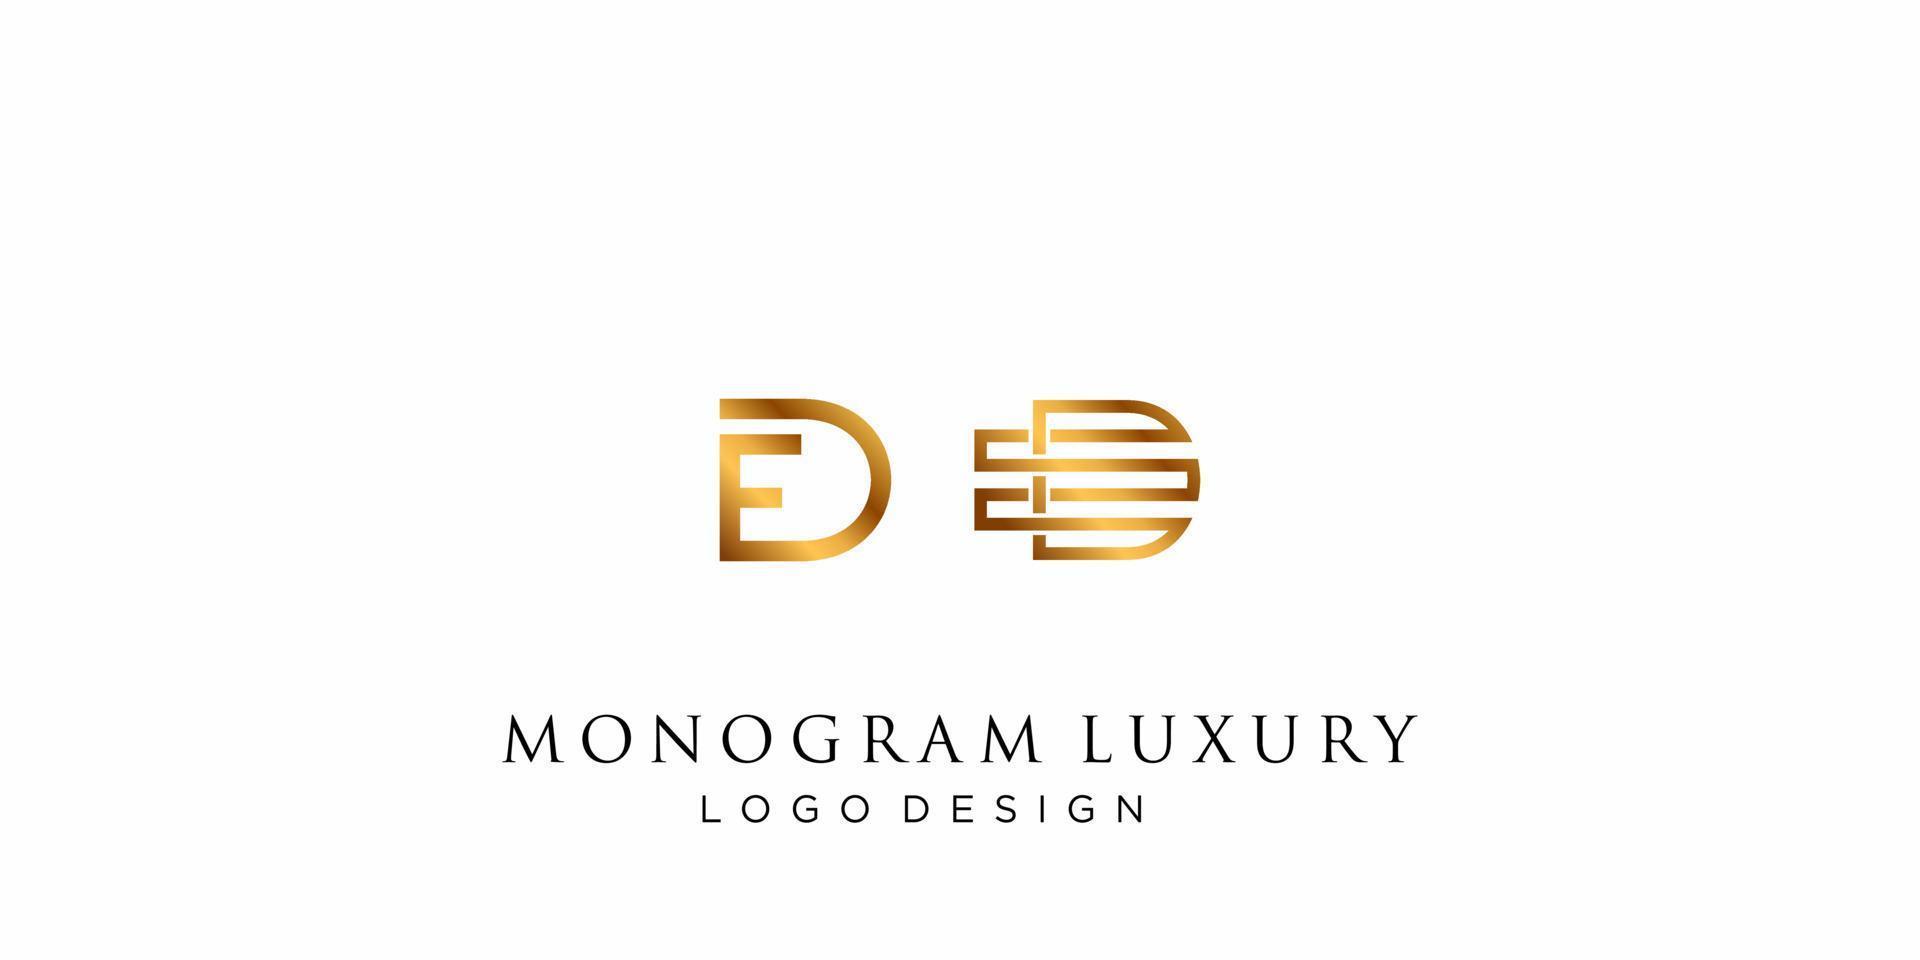 Letter D E monogram luxury logo design. vector